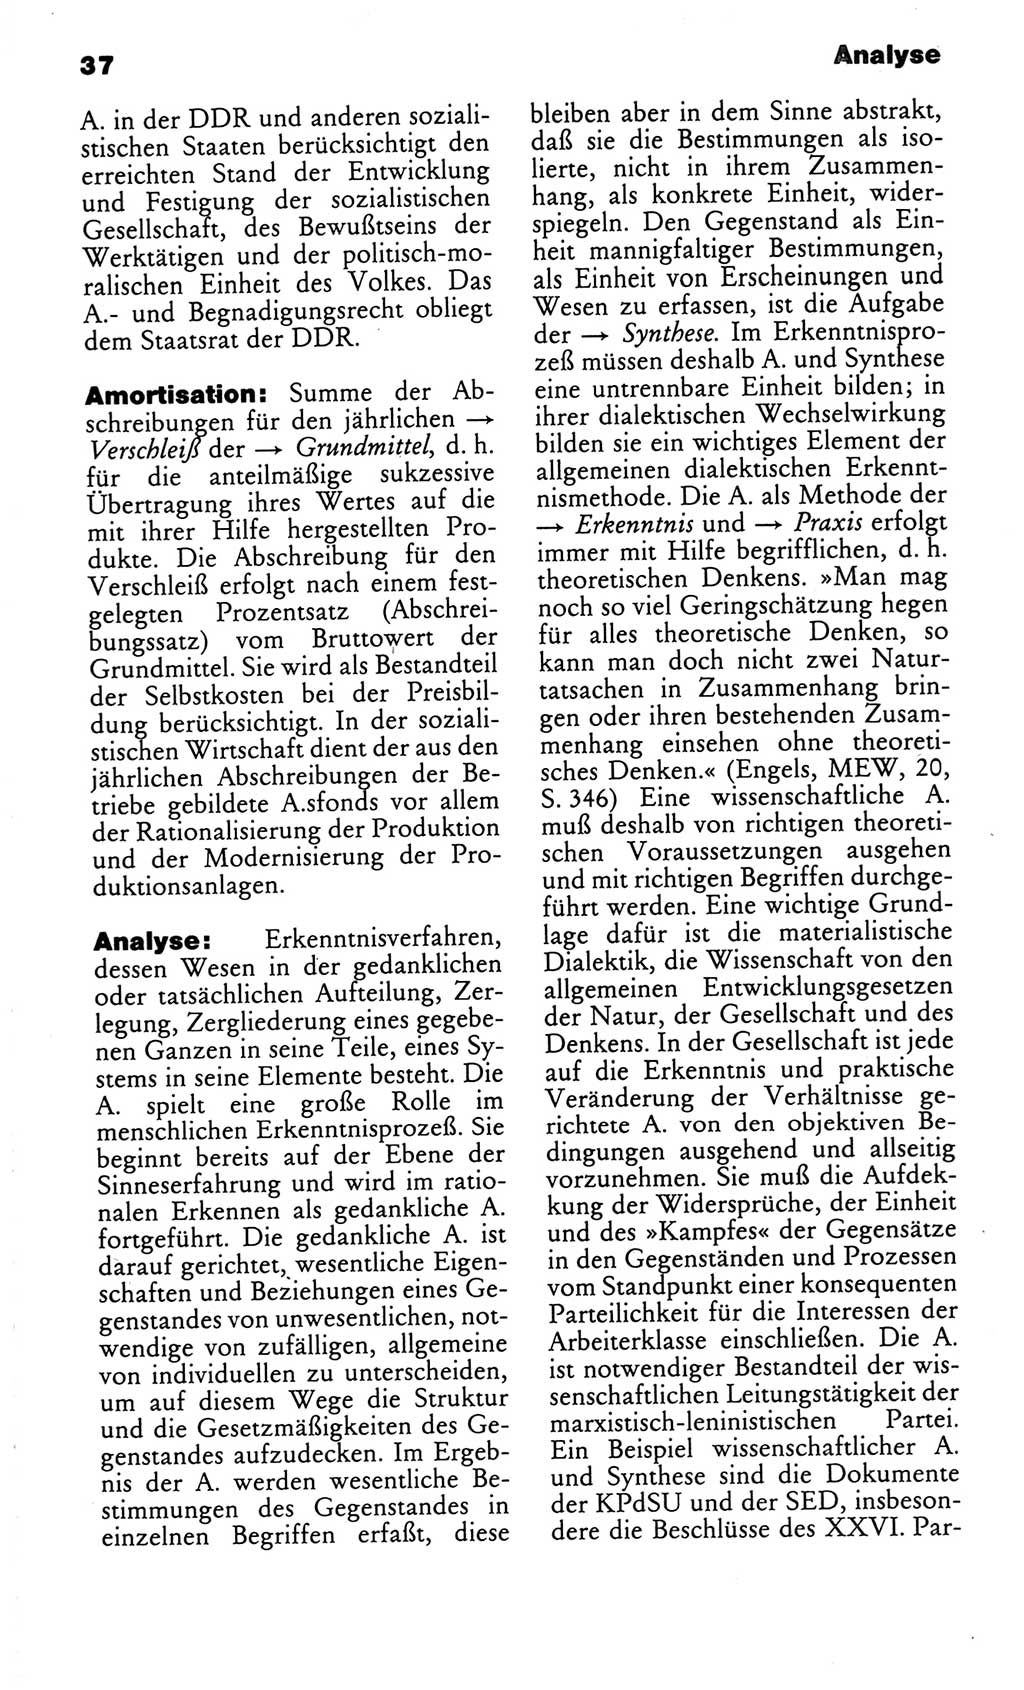 Kleines politisches Wörterbuch [Deutsche Demokratische Republik (DDR)] 1986, Seite 37 (Kl. pol. Wb. DDR 1986, S. 37)